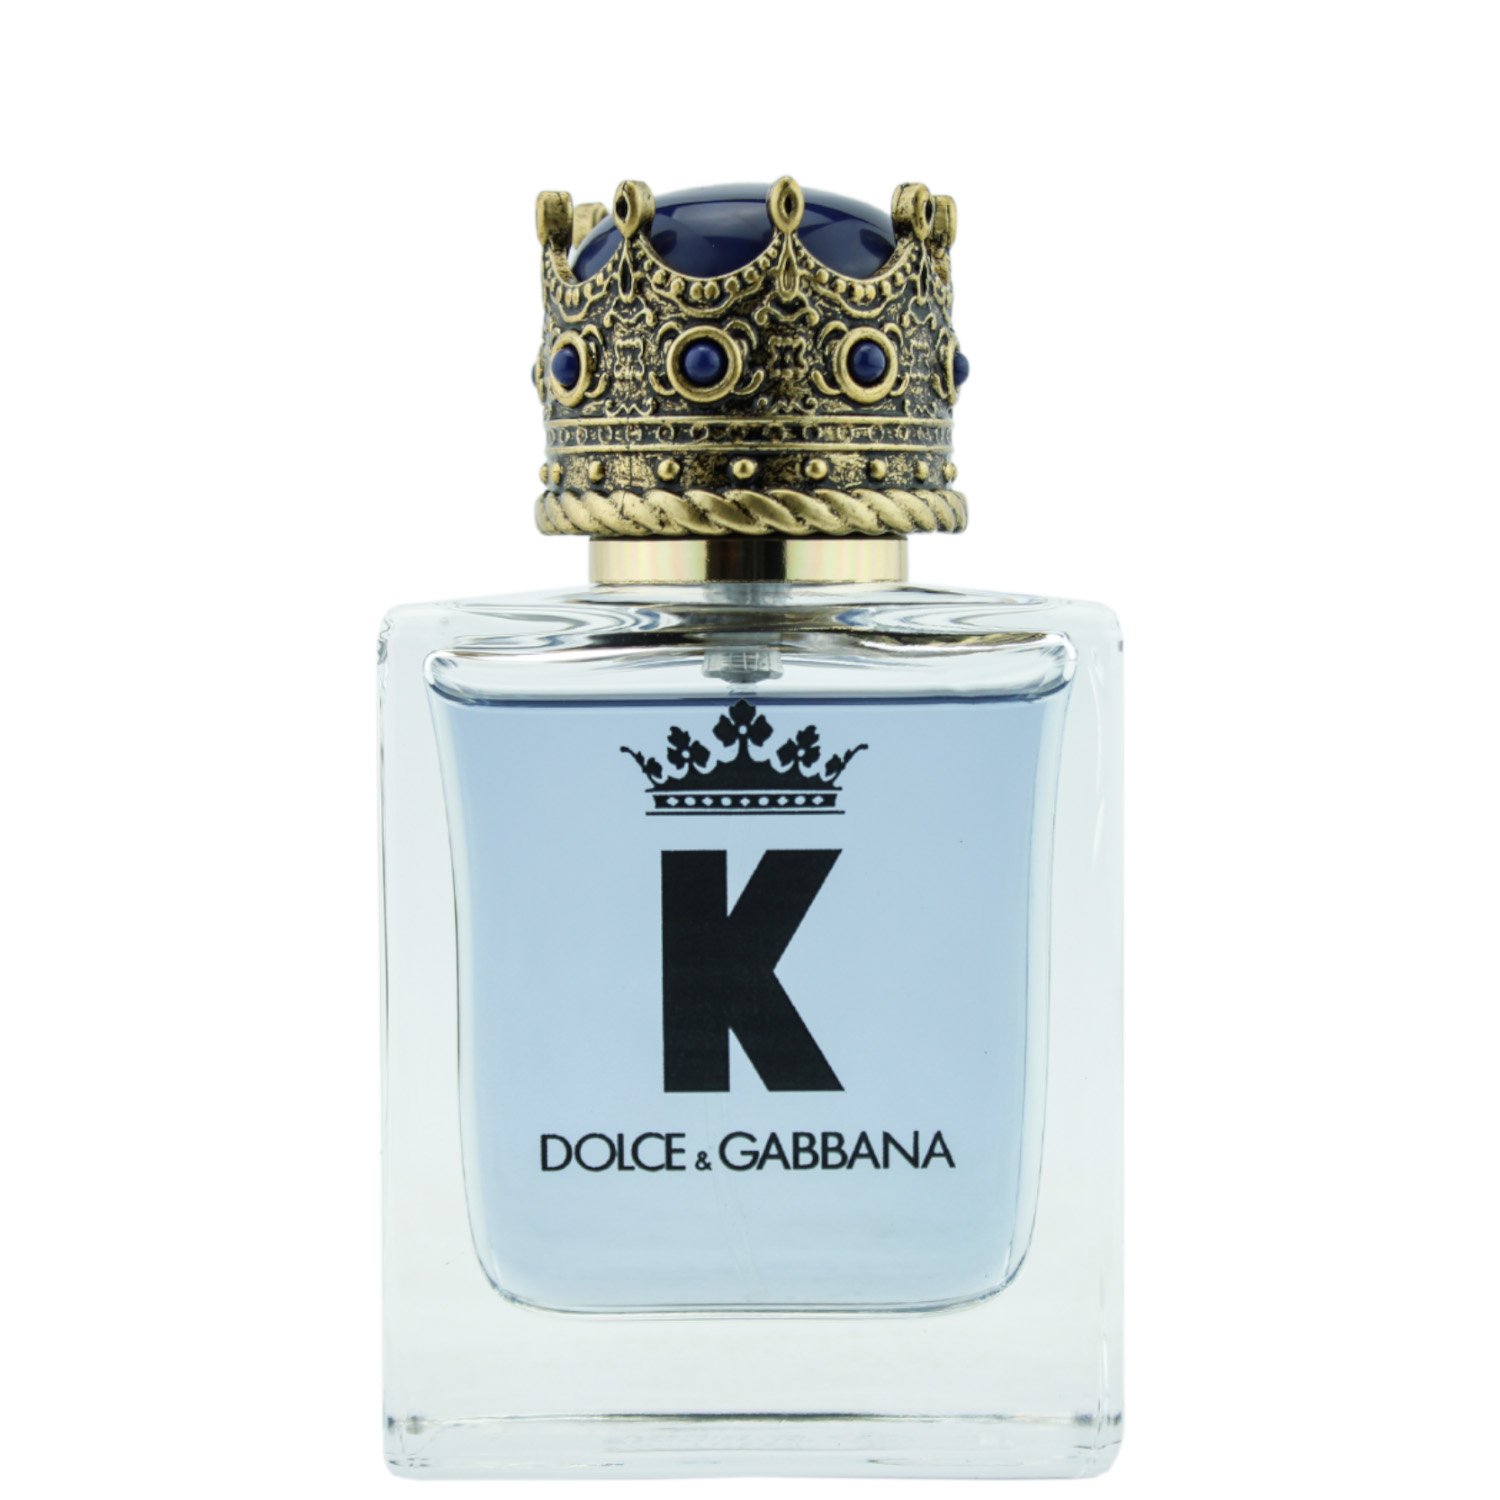 Dolce & Gabbana K by Dolce & Gabbana Eau de Toilette 50ml